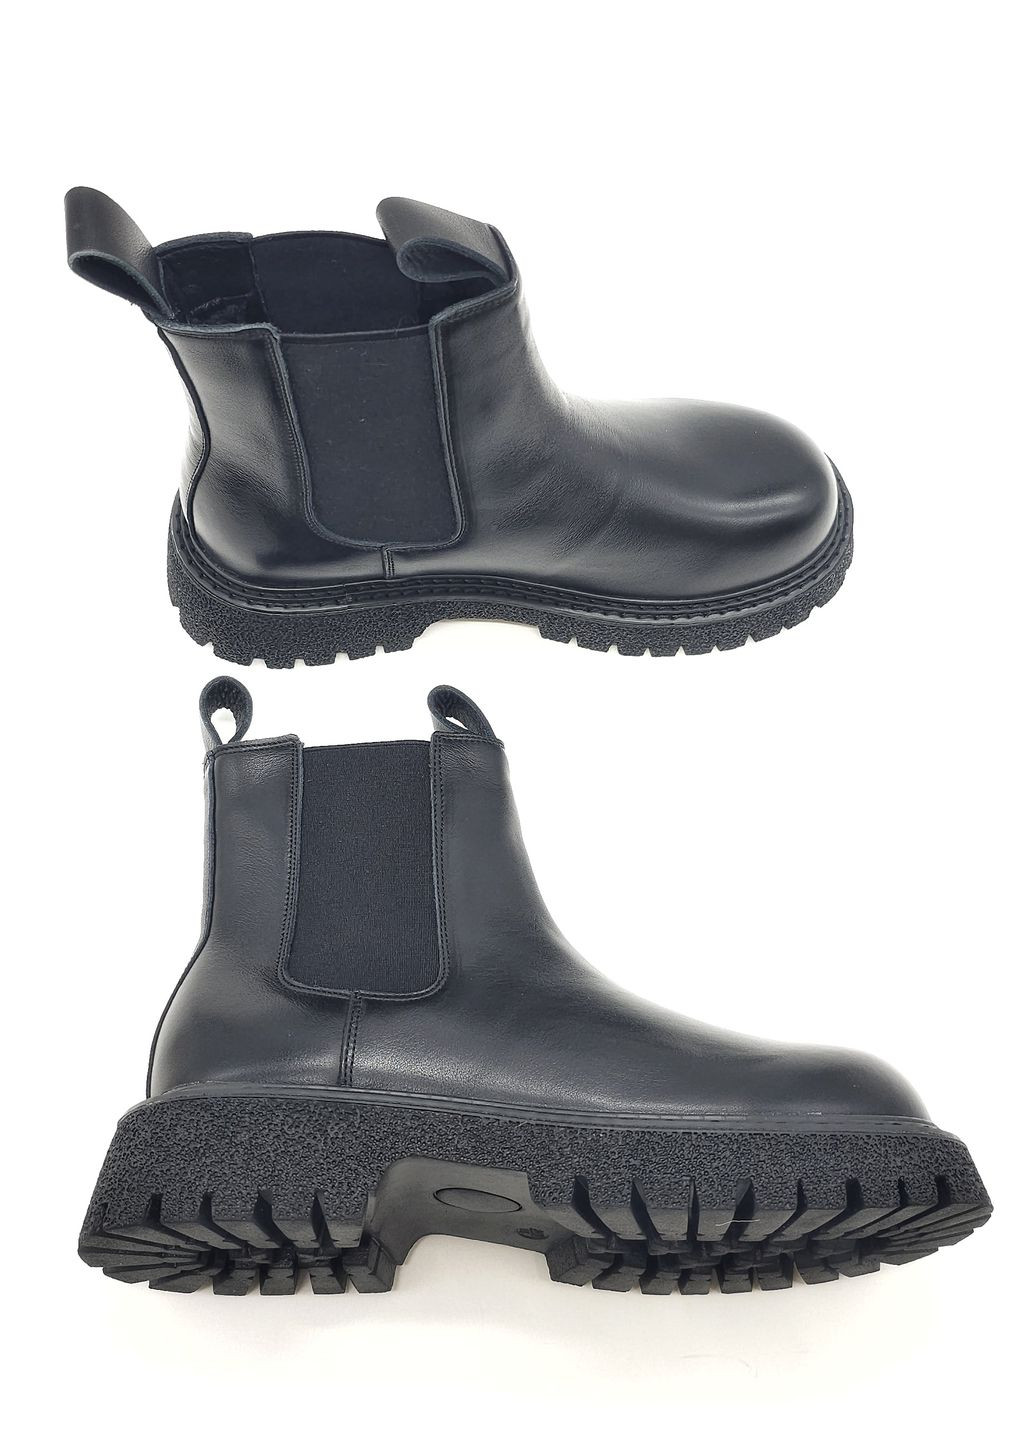 Осенние женские ботинки черные кожаные bv-13-12 23 см (р) Boss Victori